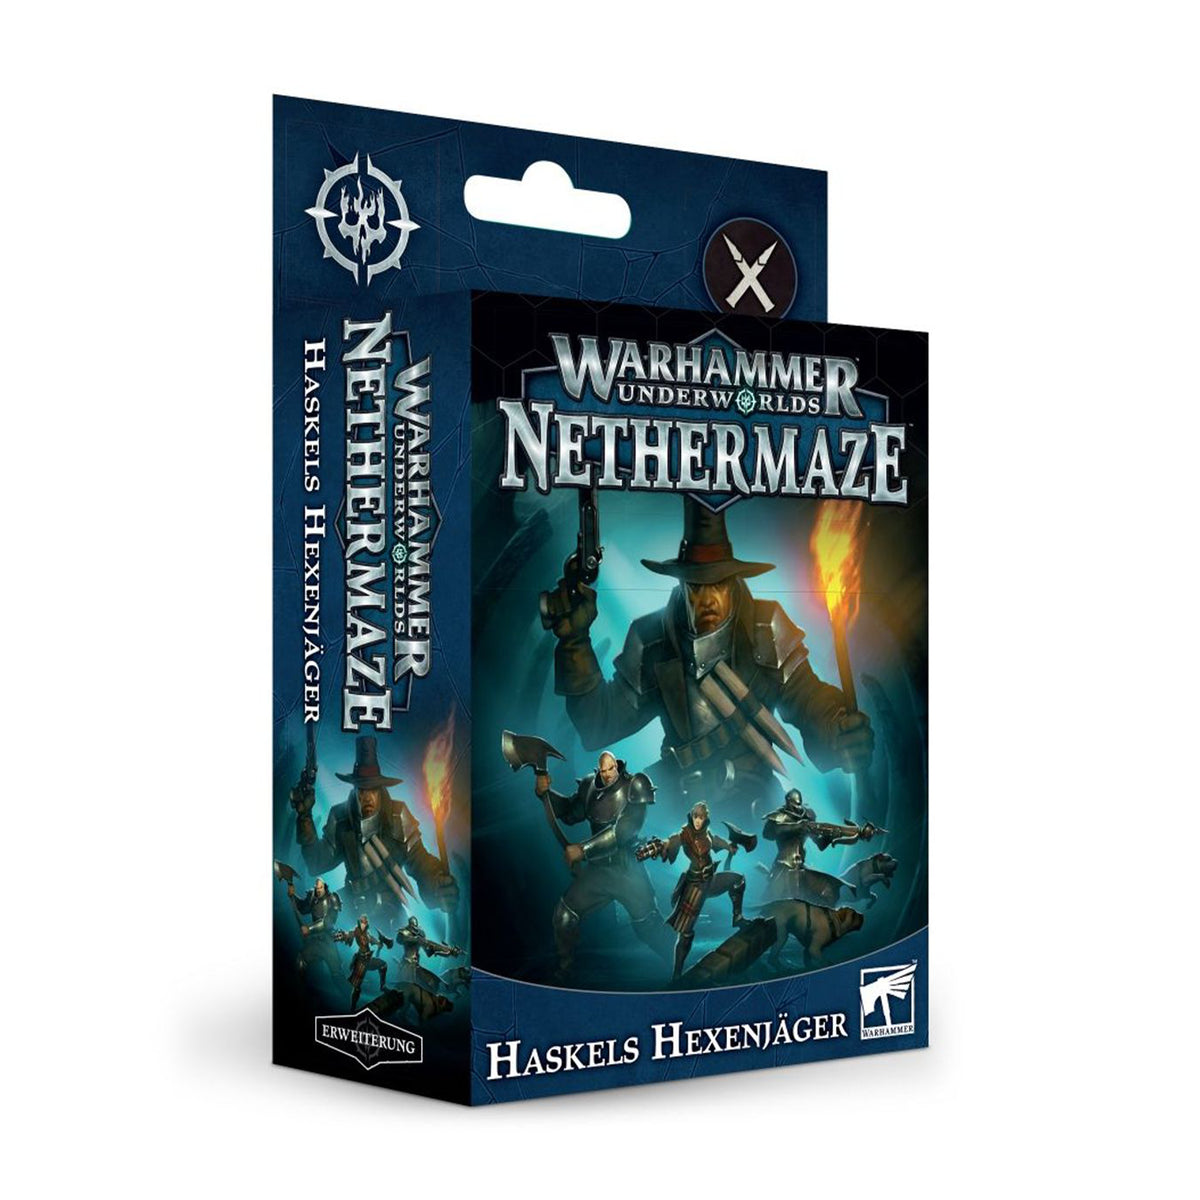 Warhammer Underworlds - Nethermaze - Haskels Hexenjäger - DE